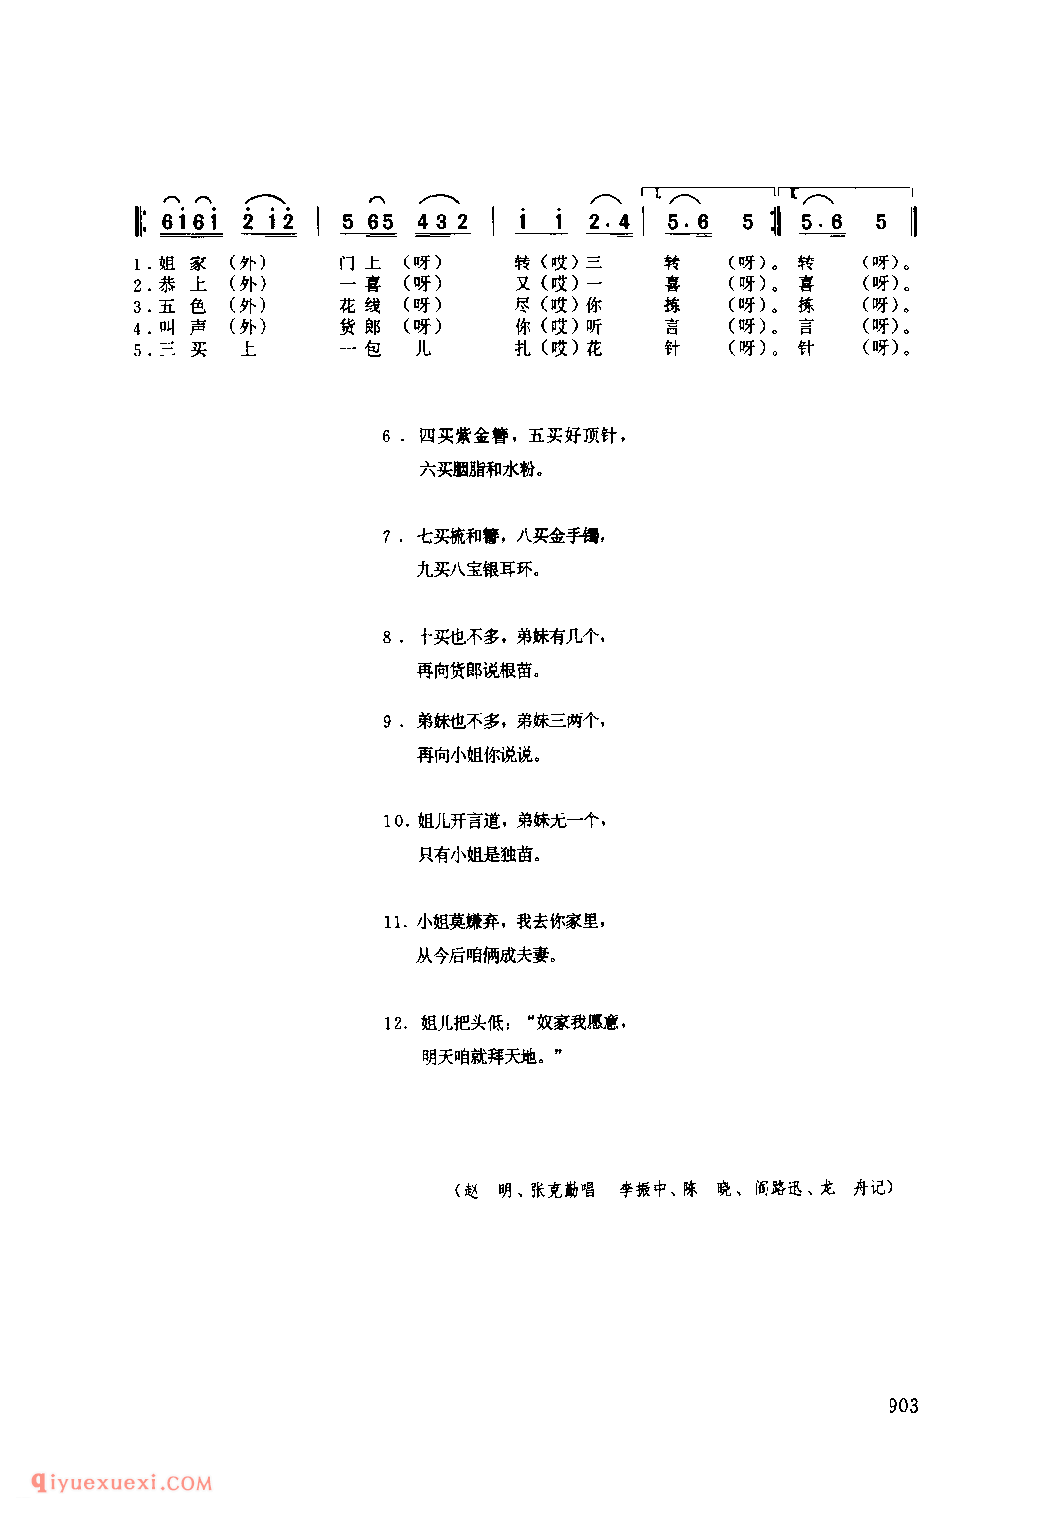 小卖杂货(对子秧歌) 1979年 凤县_社火小调_陕西民歌简谱